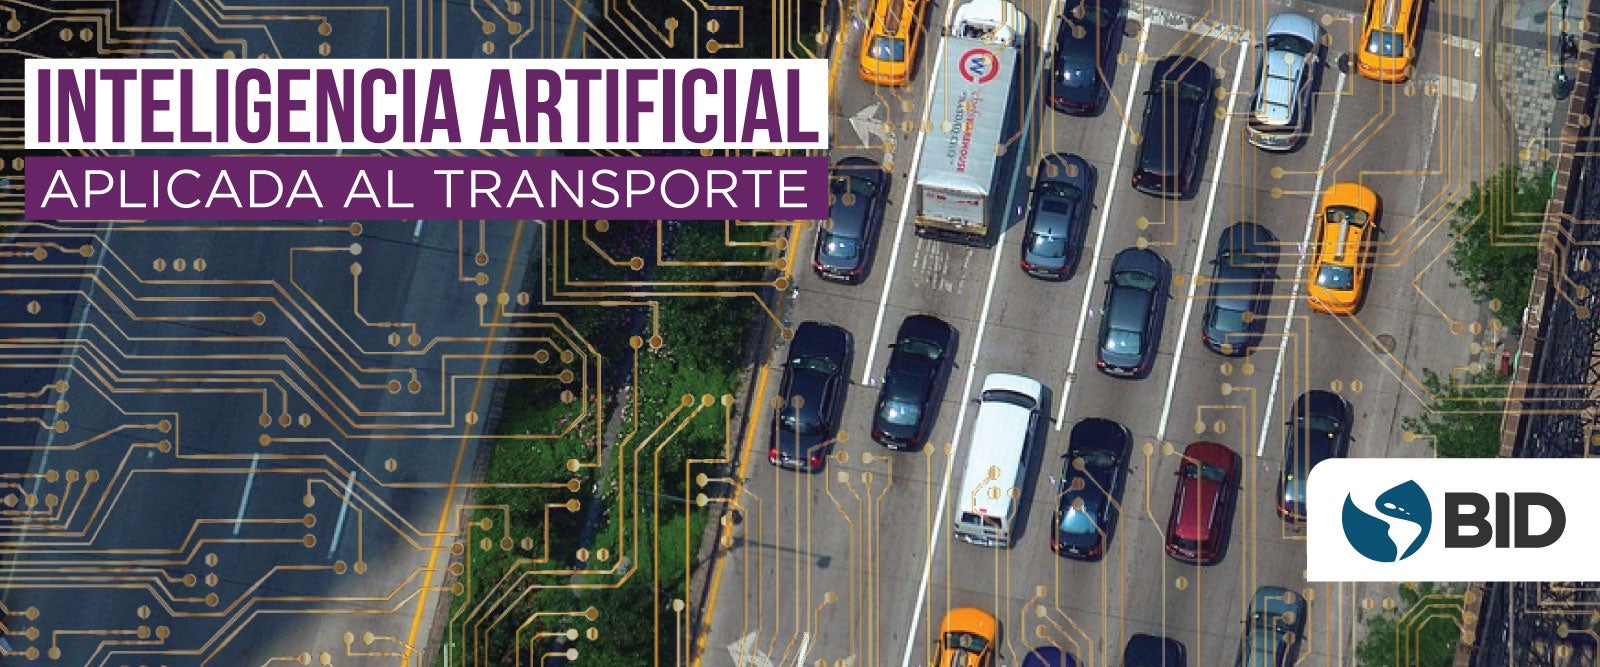 OER Inteligencia Artificial en el Transporte course image